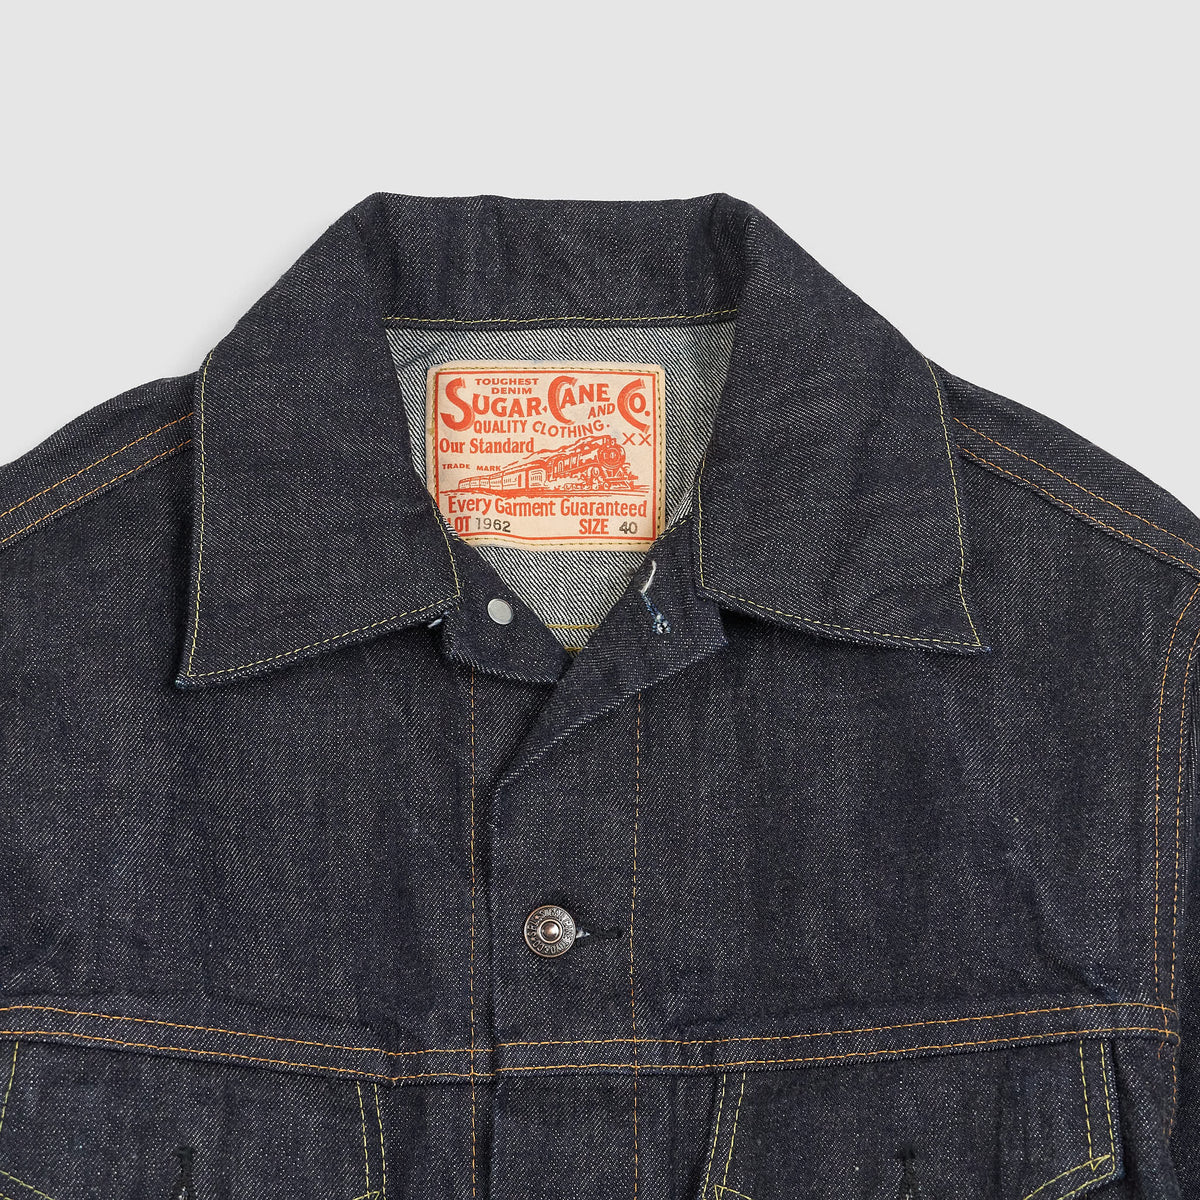 Sugar Cane Model 1962 14.oz.Denim Jeans Jacket